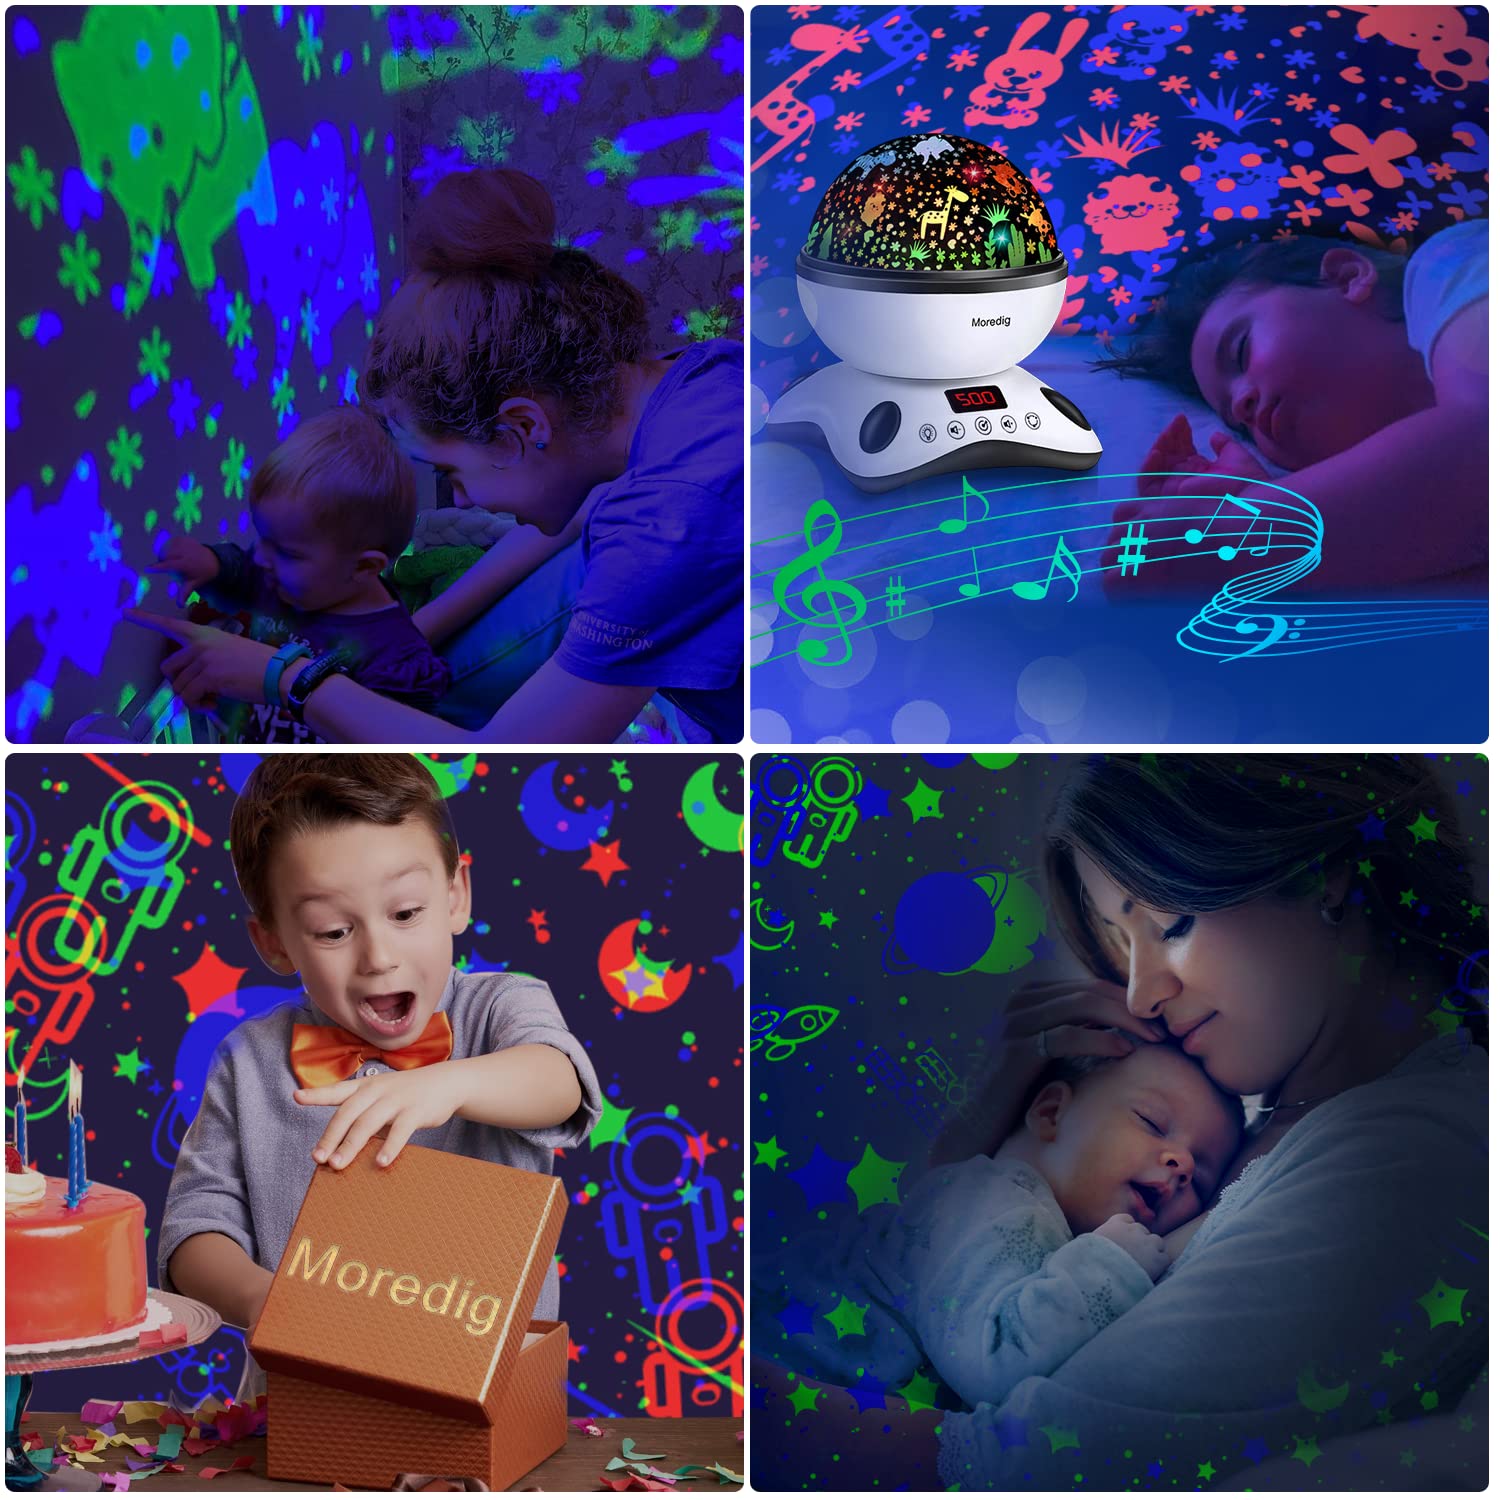 Moredig Proyector Estrellas Bebé, Lámpara Proyector Infantil Luz Nocturna  con Rotación y Música, Función de Temporización y Control Remoto, 8 Modos  Luz de la Noche, Perfecto Regalos para Bebes - Azul 